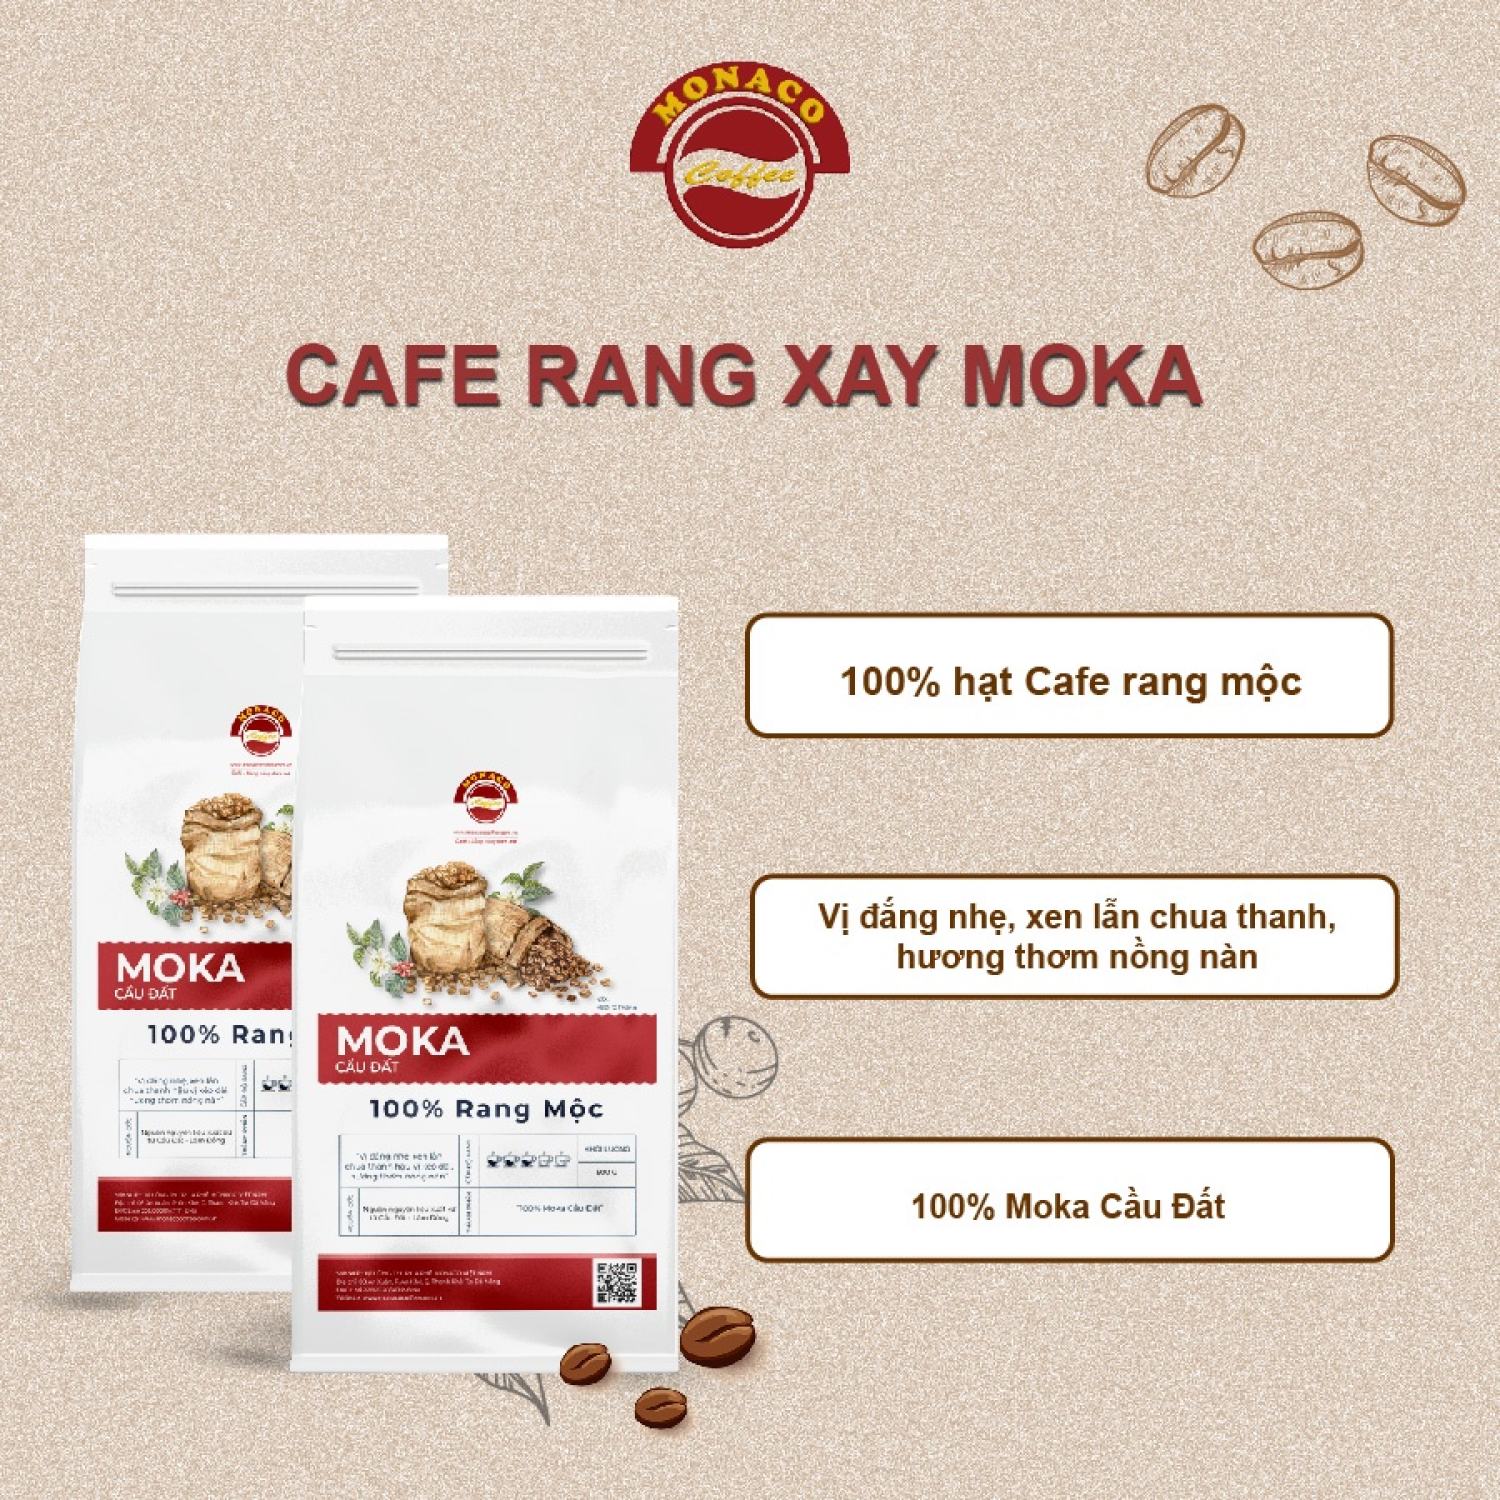 Cà phê Moka ĐB - Cà phê rang mộc thượng hạng 100 nguyên chất từ Monaco